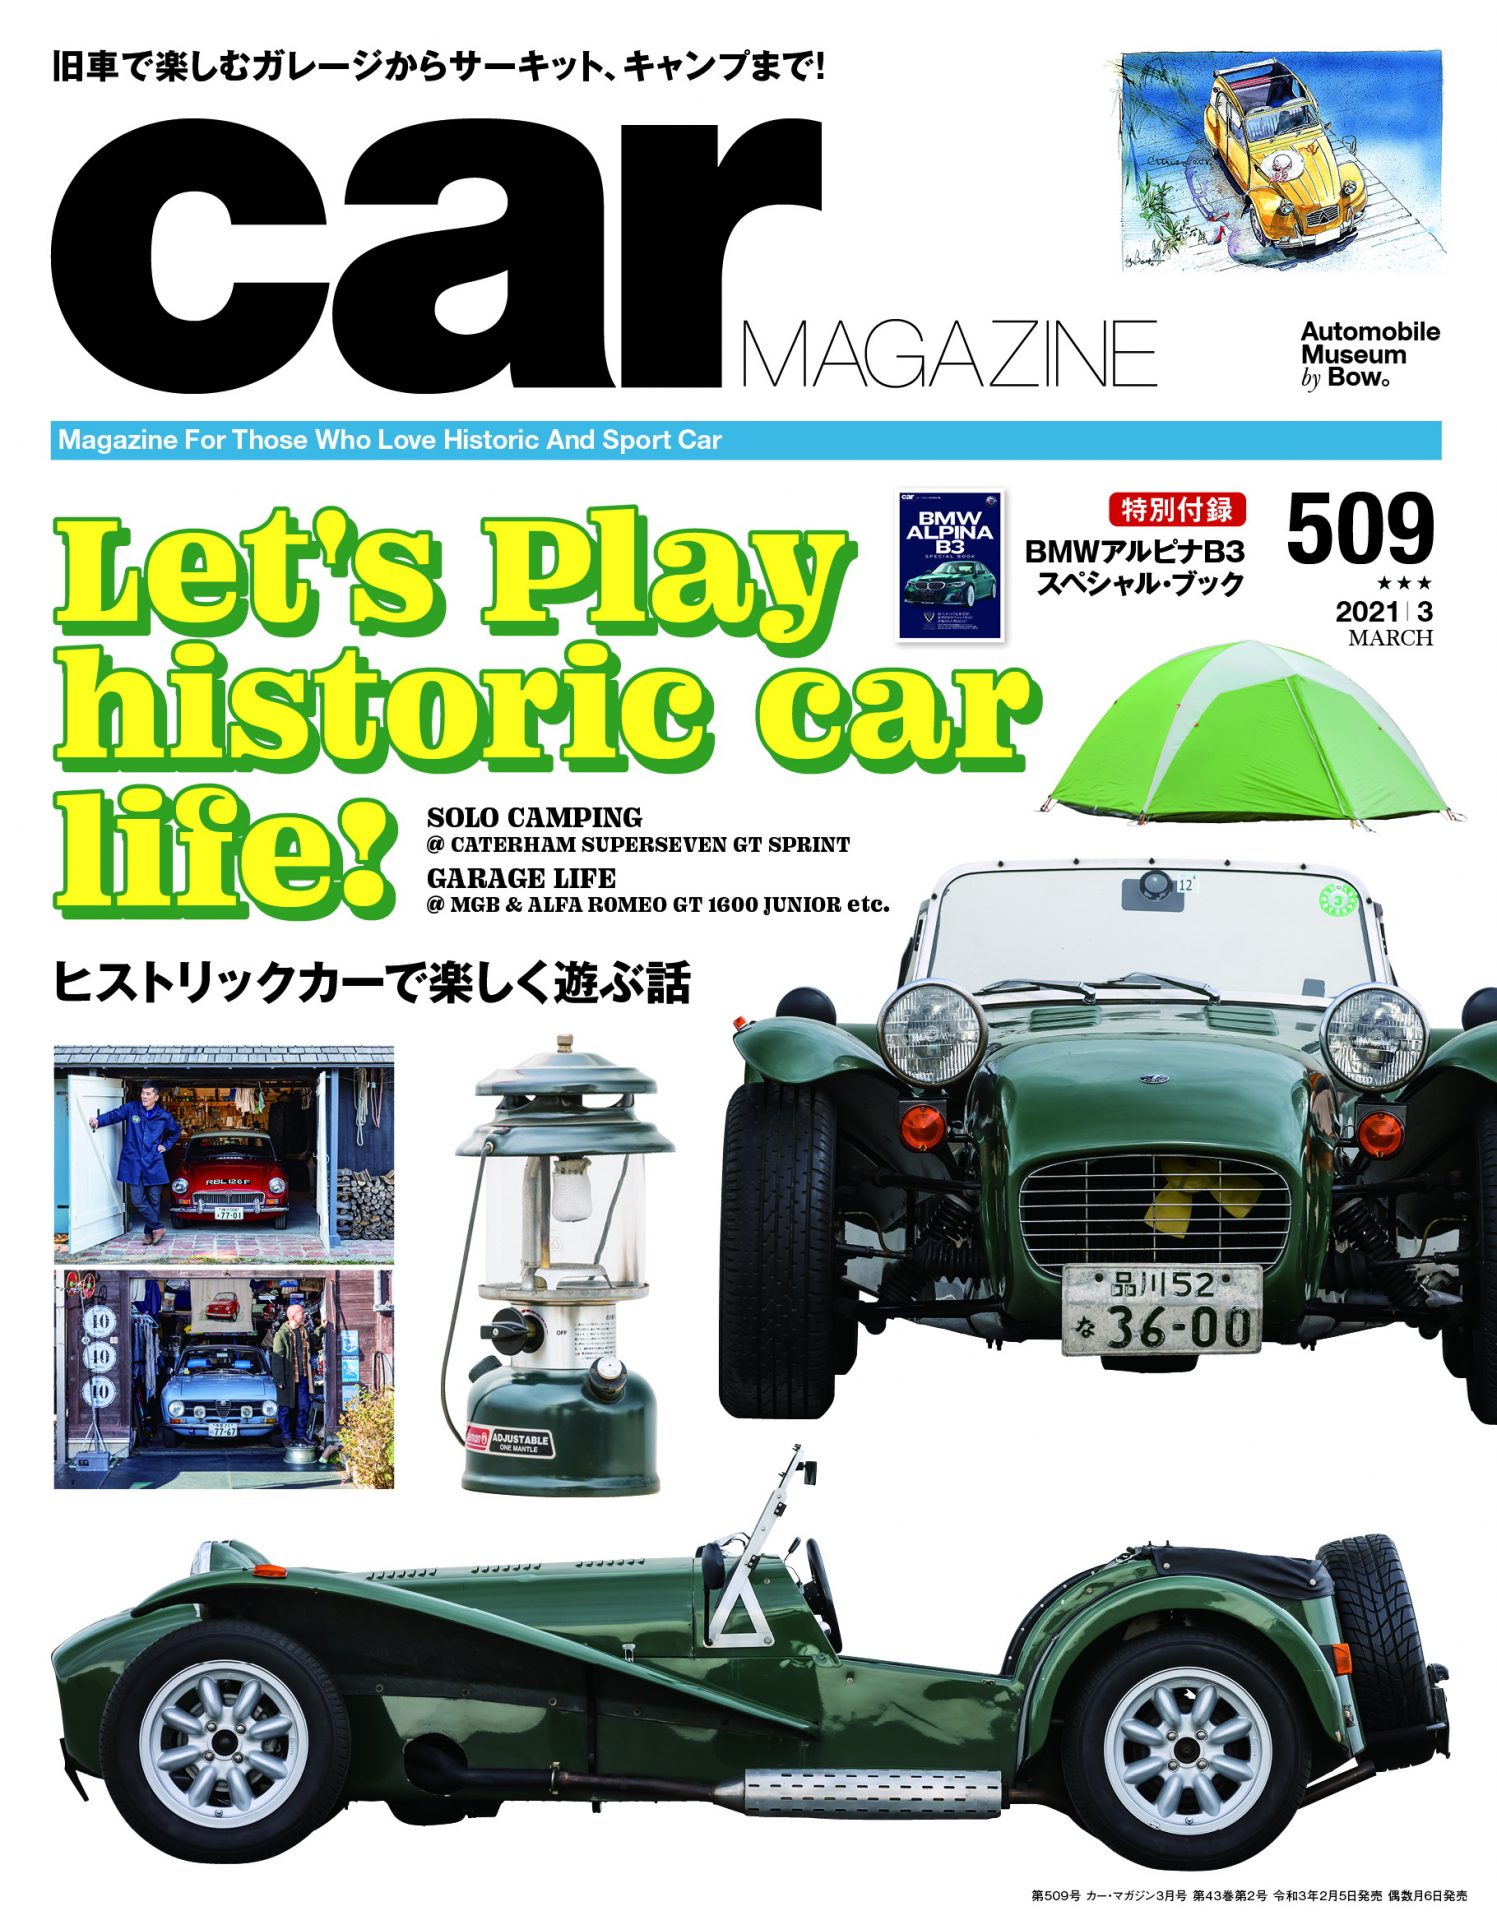 Car Magazine | ネコ・パブリッシング